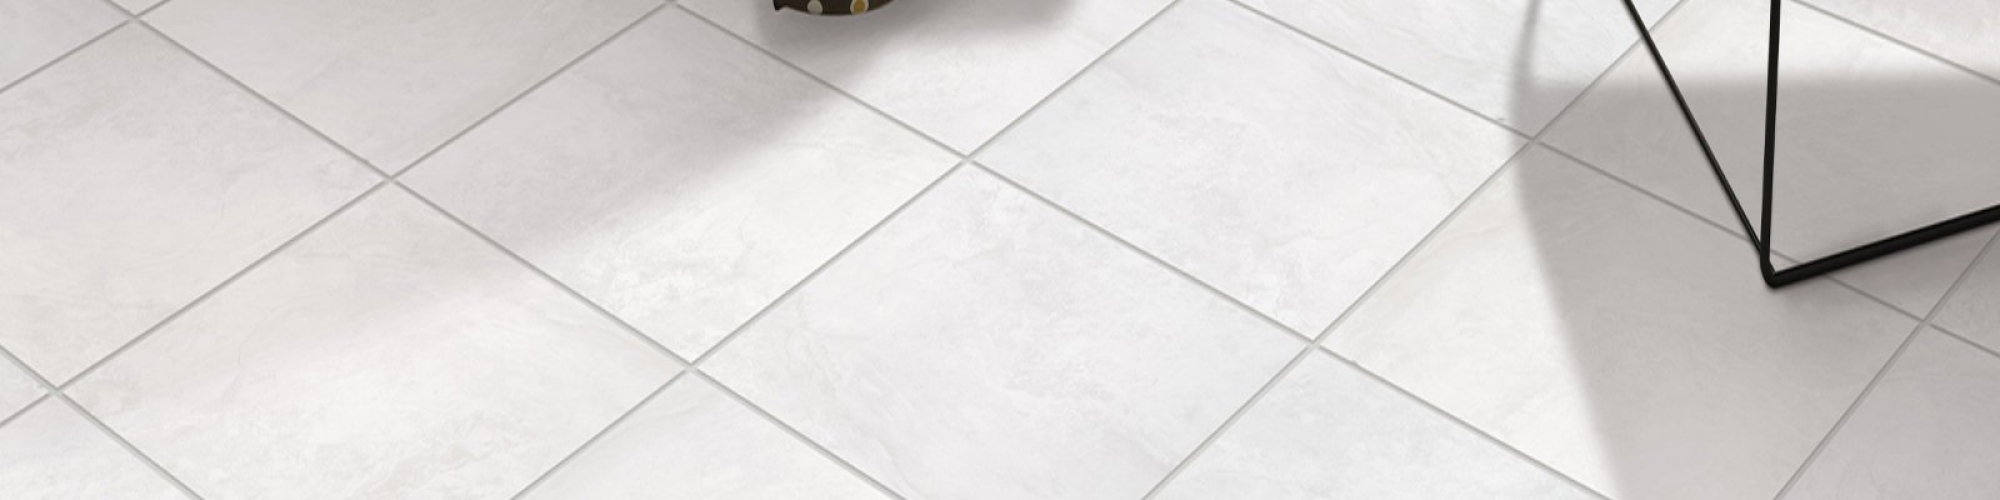 White tile flooring